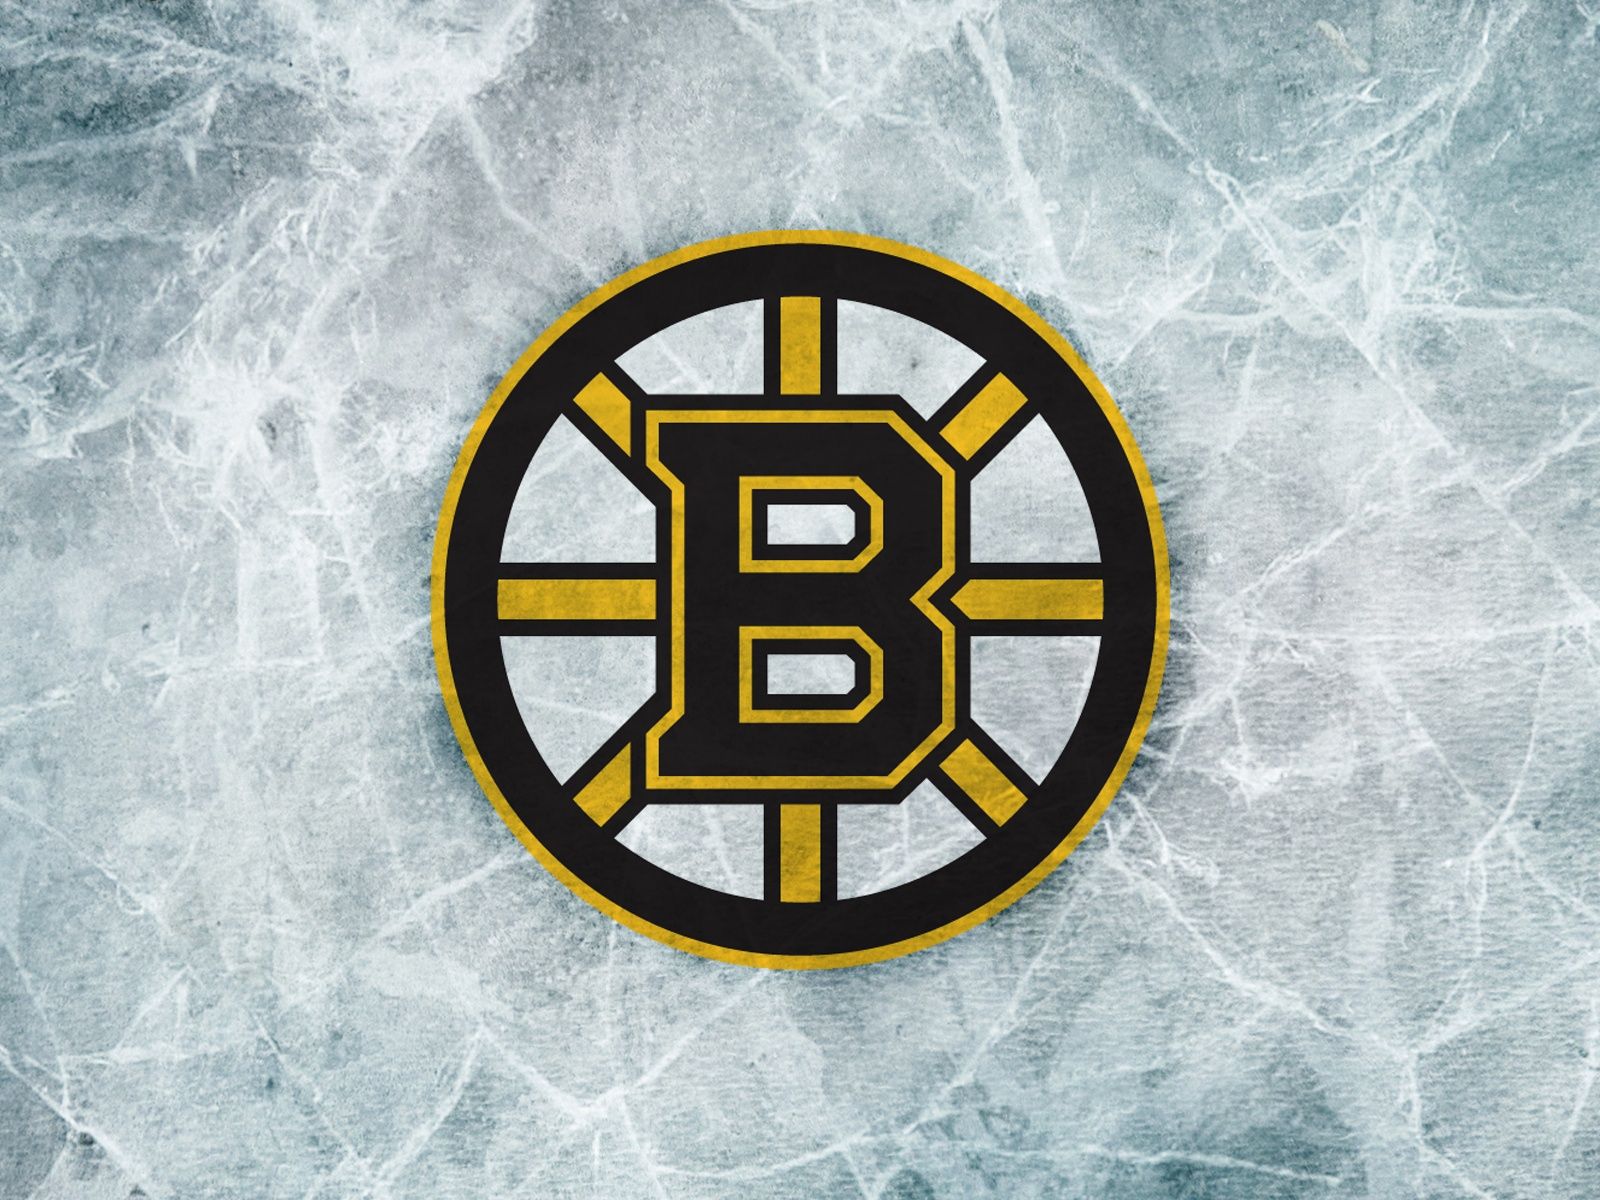 Boston Bruins Wallpaper | 1600x1200 | ID:25615